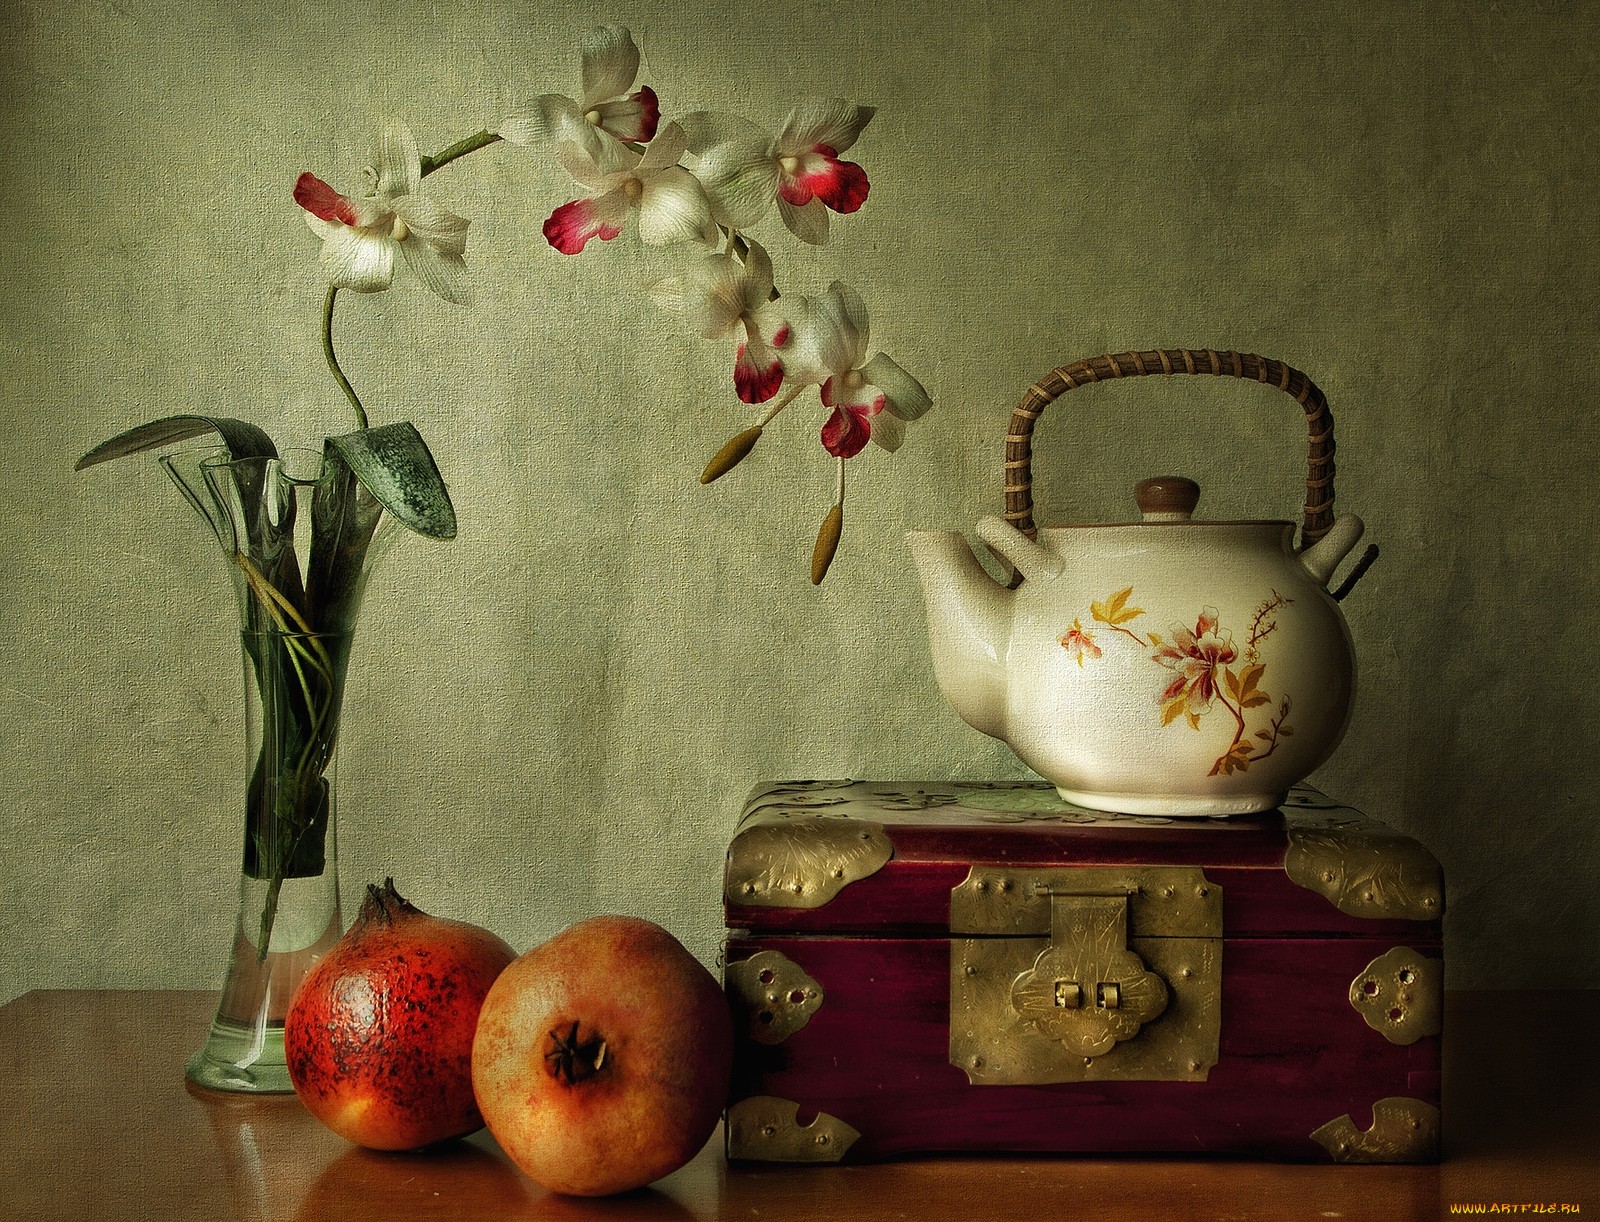 be still wallpaper,still life photography,still life,painting,apple,fruit